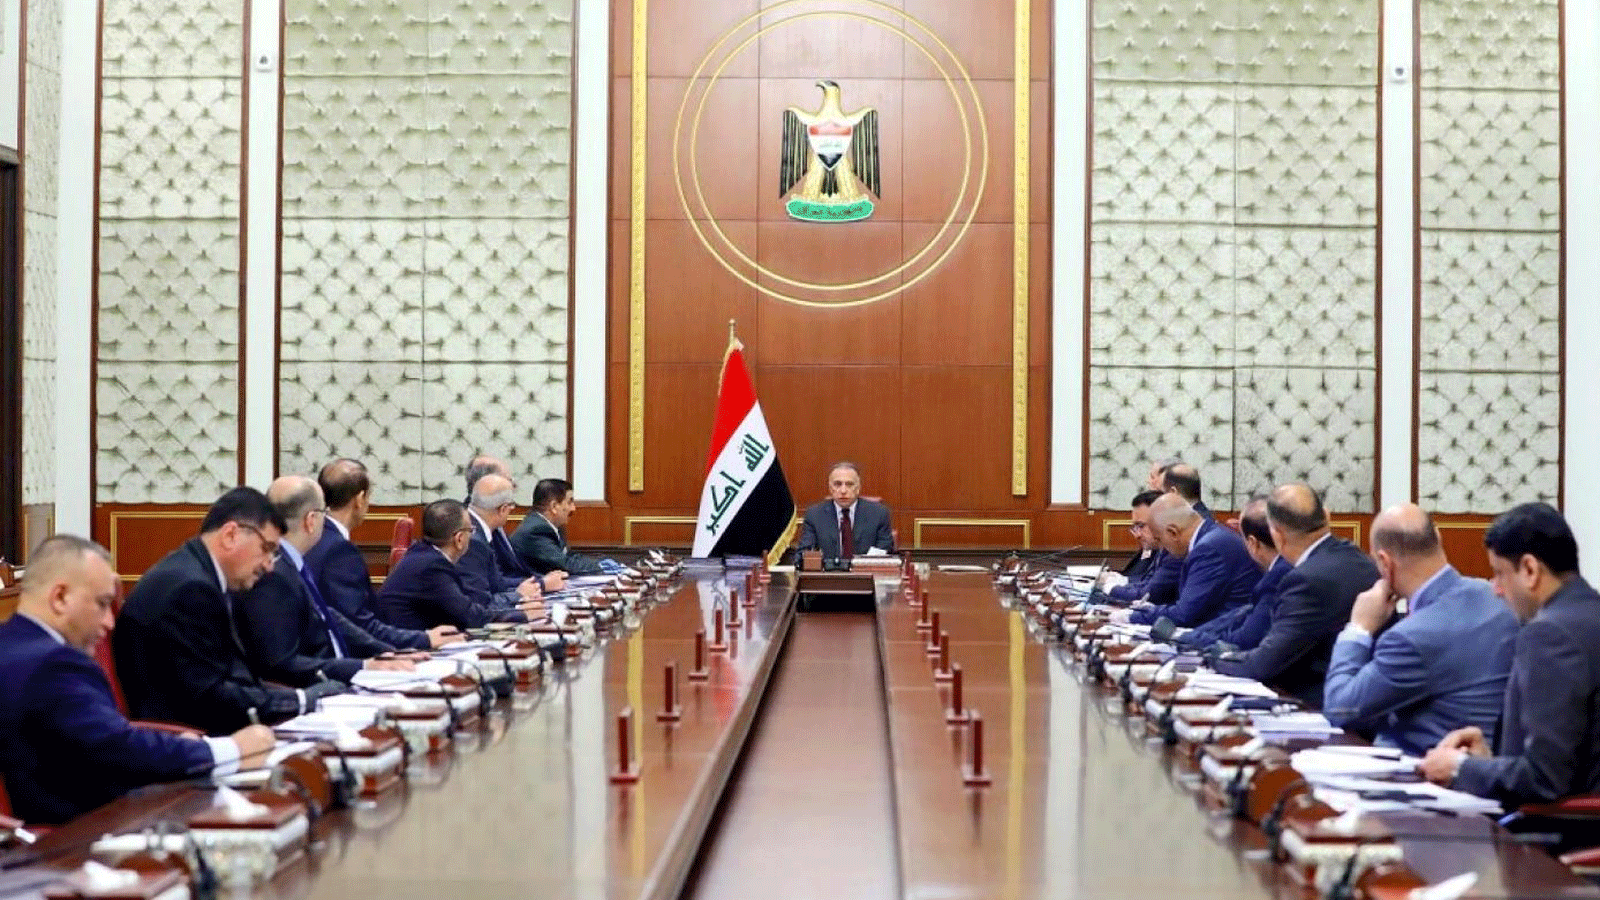 رئيس الوزراء العراقي مصطفى الكاظمي على رأس الإجتماع الوزاري لمجلس الوزراء في بغداد. بتاريخ 9 أيار/ مايو 2020